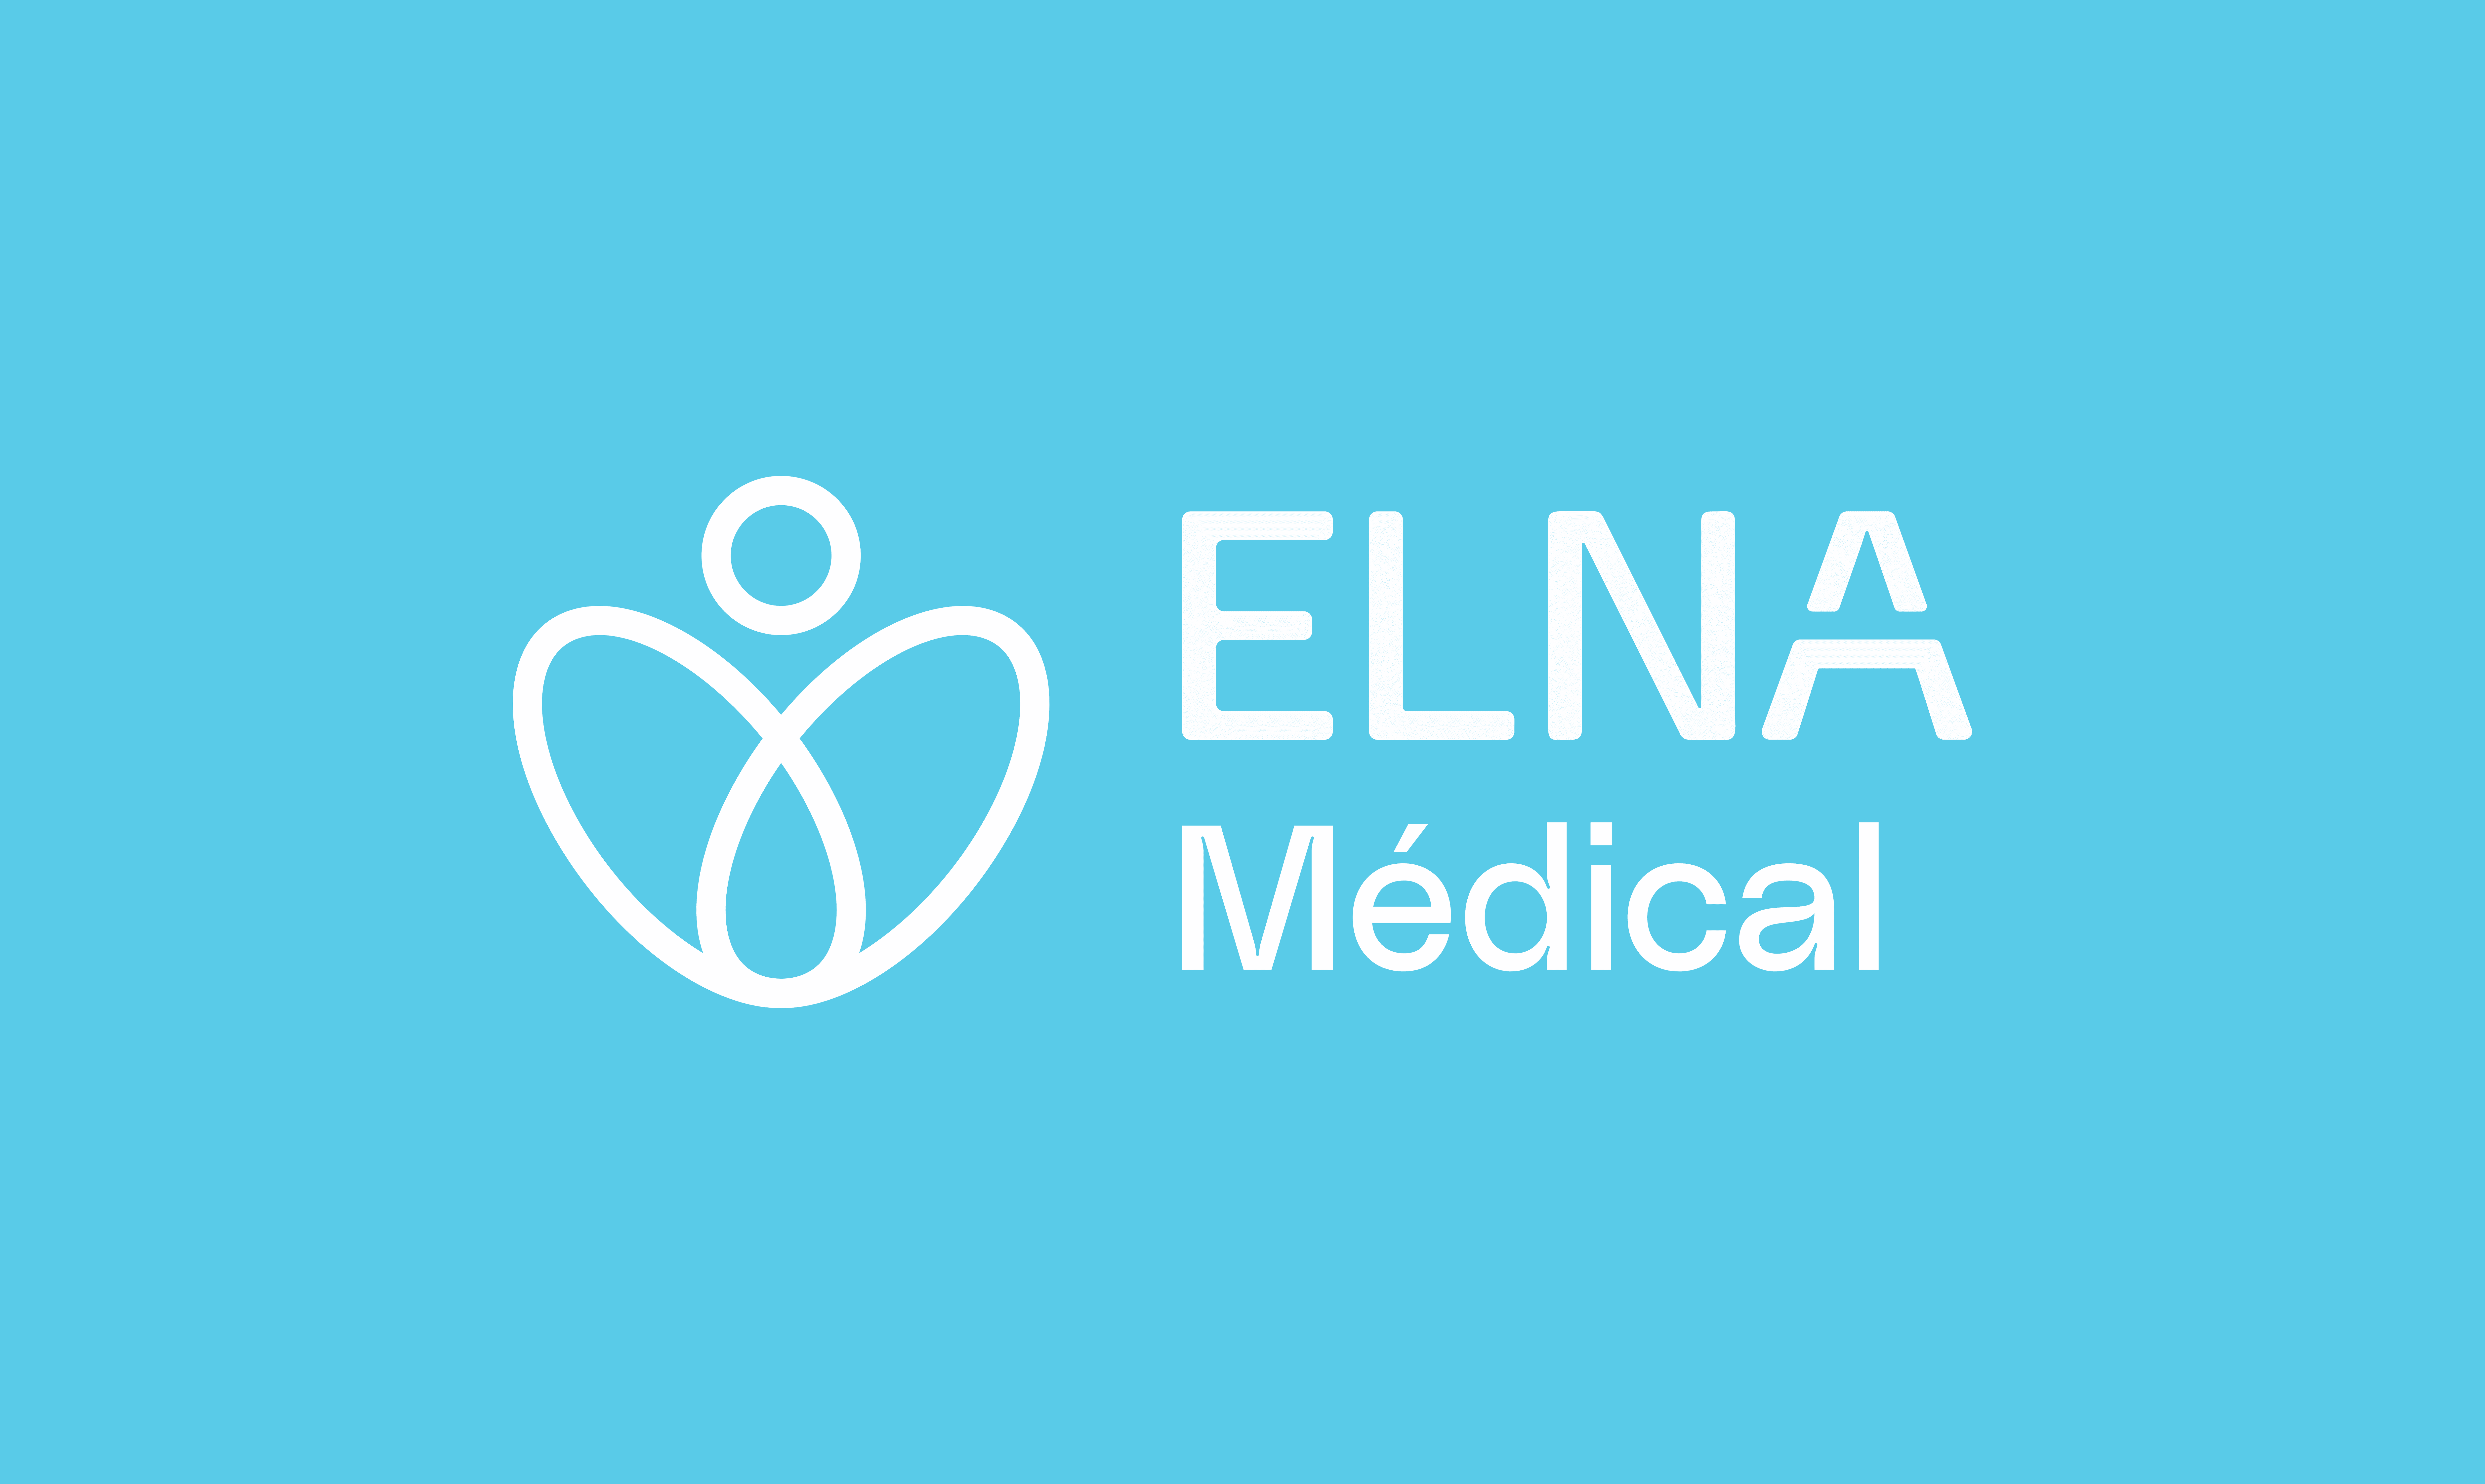 ELNA Logo in French 16:9